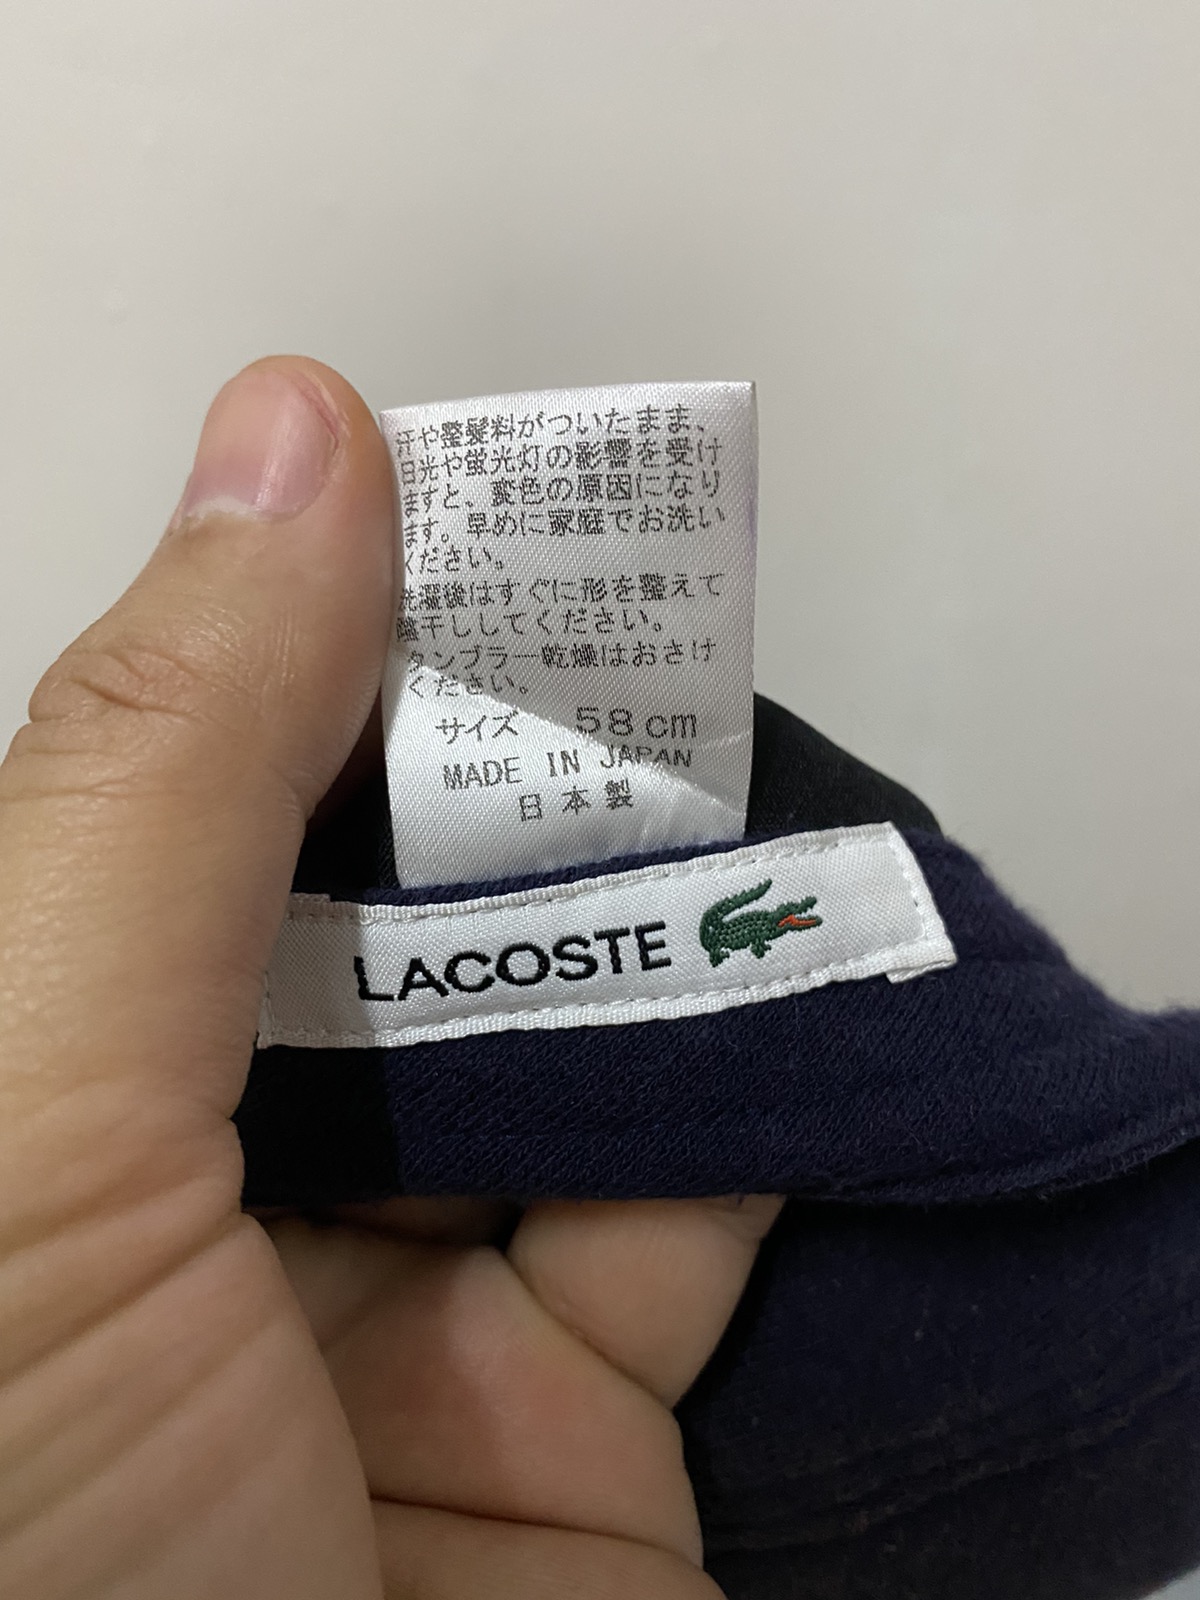 Lacoste Vintage Big Logo Made in Japan - 6